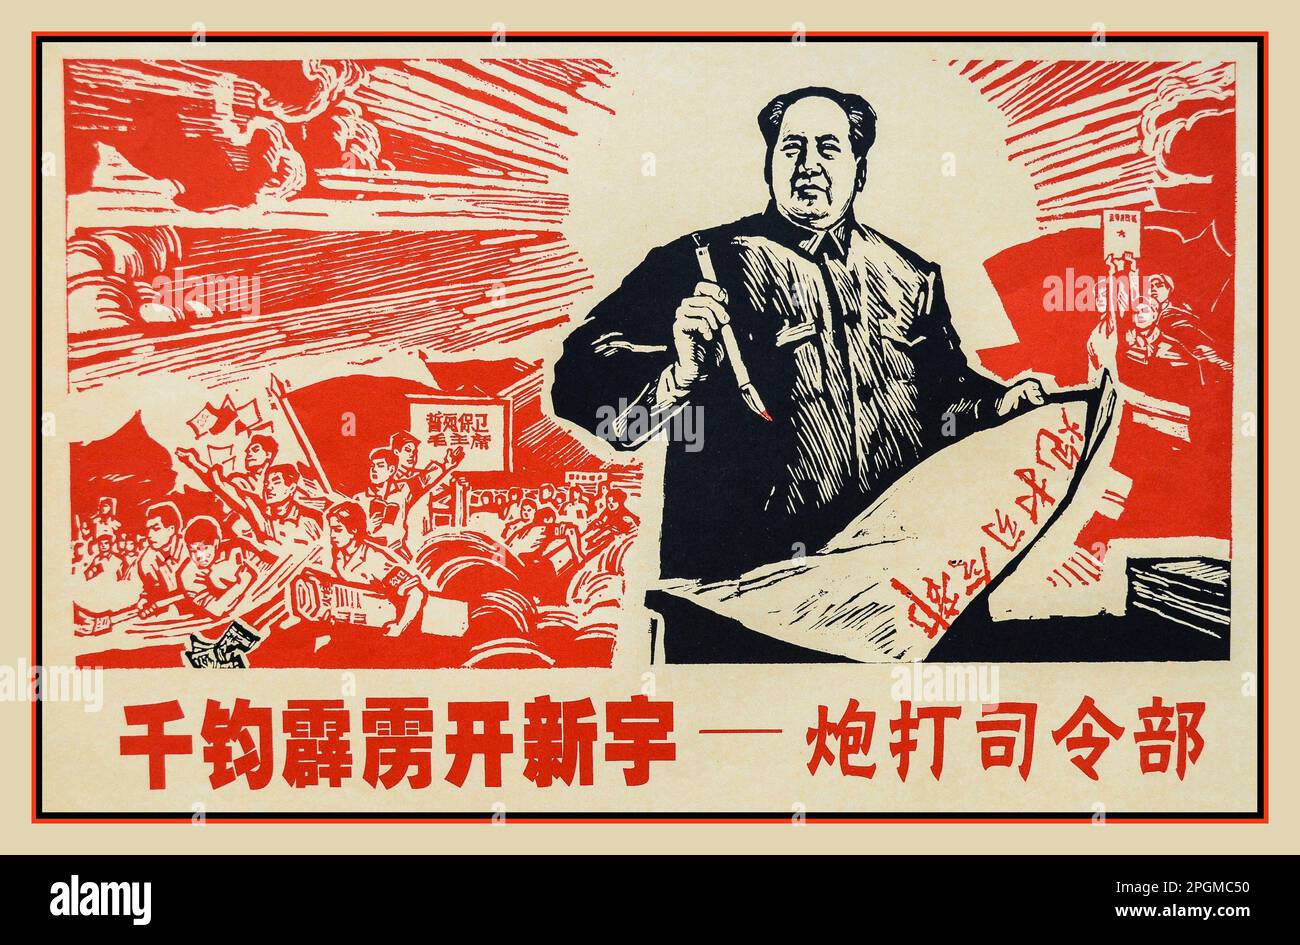 1960s Poster de propagande chinoise présentant le président Mao, en tant que chef suprême de Dieu, qui écria ses pensées pour ses fidèles communistes enthousiastes. SOUS-TITRÉ TRADUIT : DES MILLIERS D'ORAGES OUVRENT LE NOUVEL UNIVERS, BOMBARDENT LE QUARTIER GÉNÉRAL. Banque D'Images